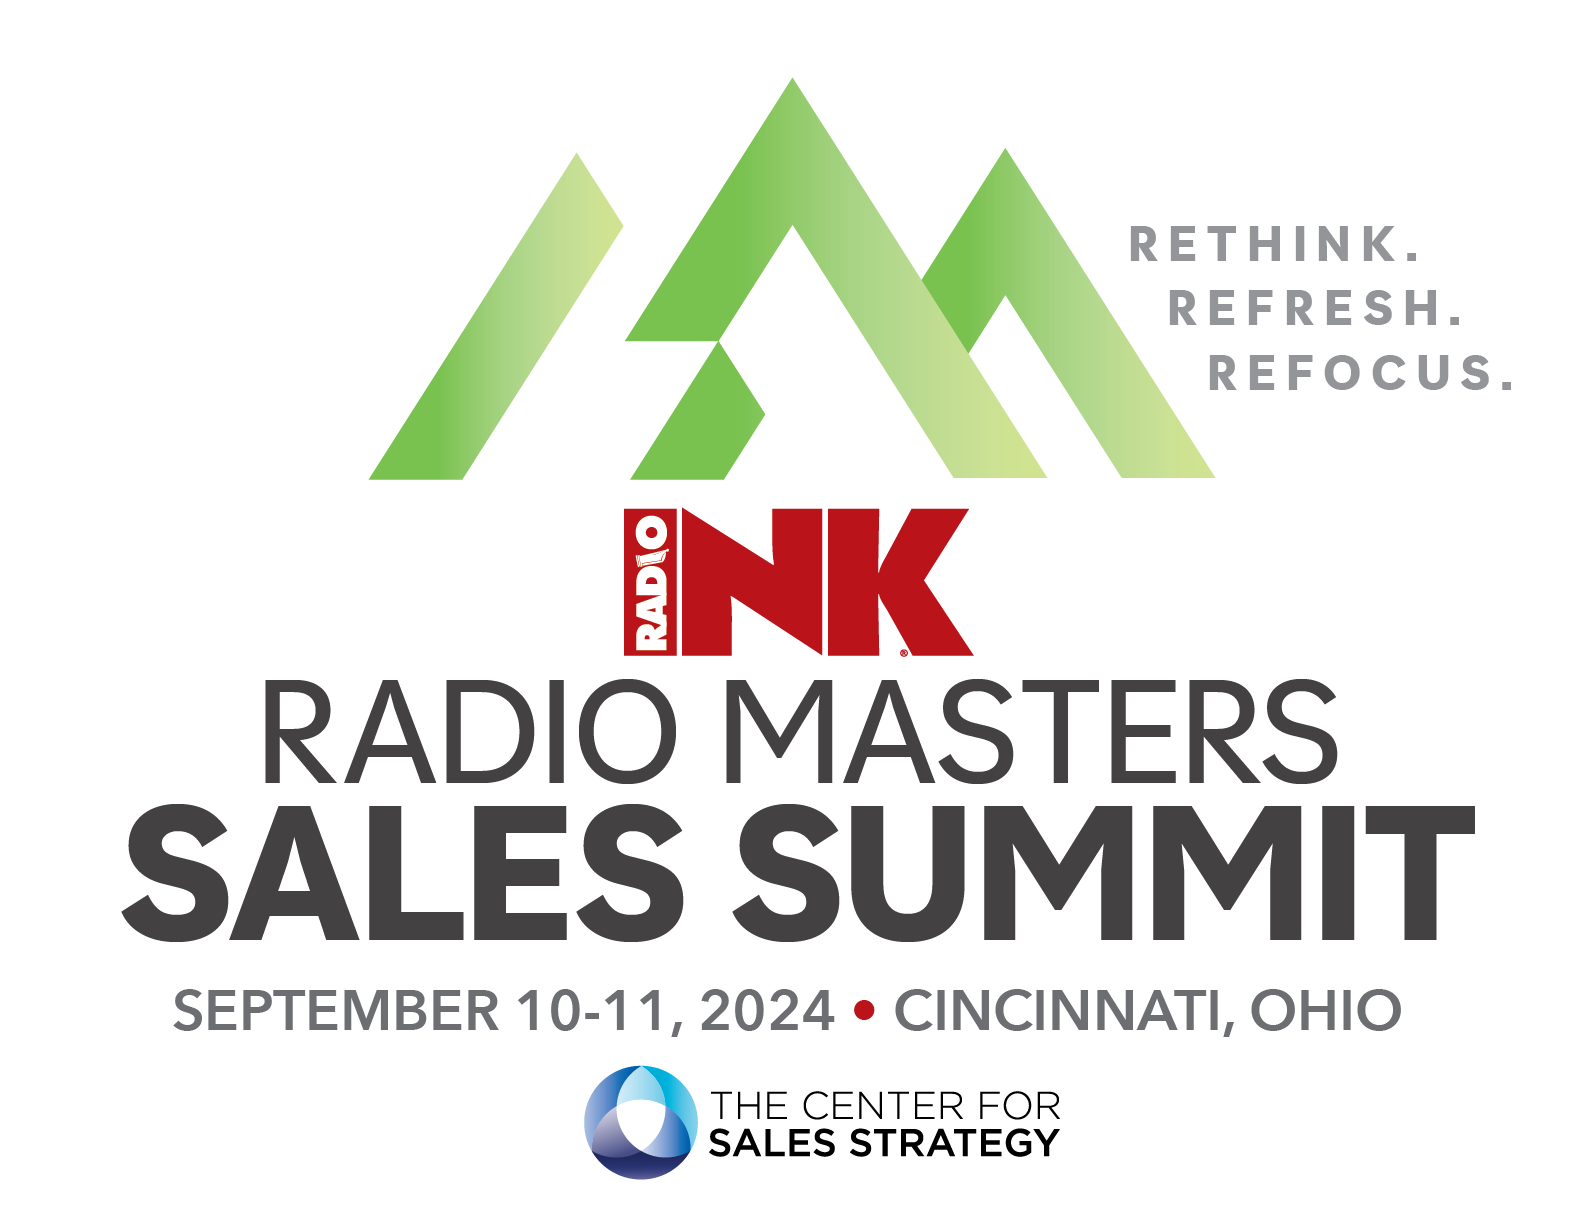 The Radio Masters Sales Summit